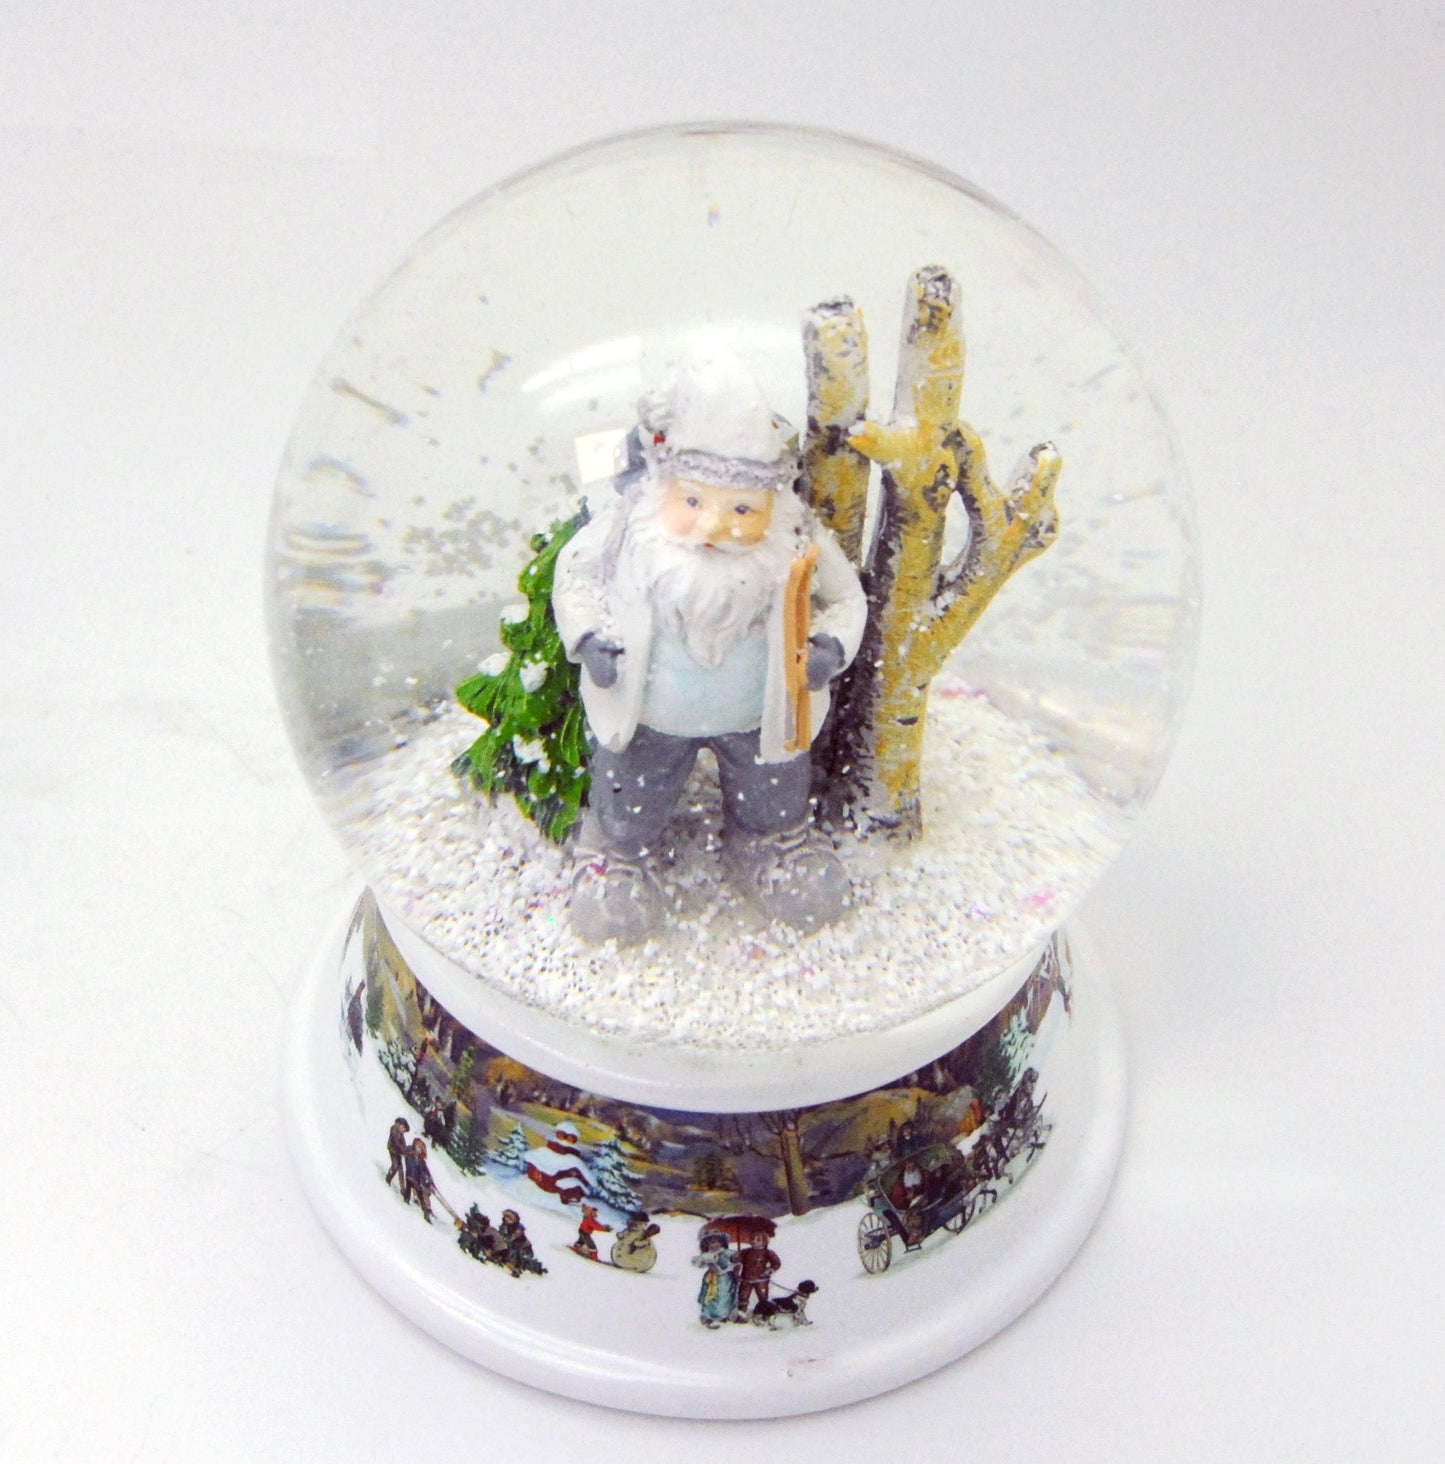 Schneekugel Santa weiß im Winterwald auf Sockel nostalgische Winterlandschaft mit Spieluhr 10 cm Durchmesser - Schneekugelhaus